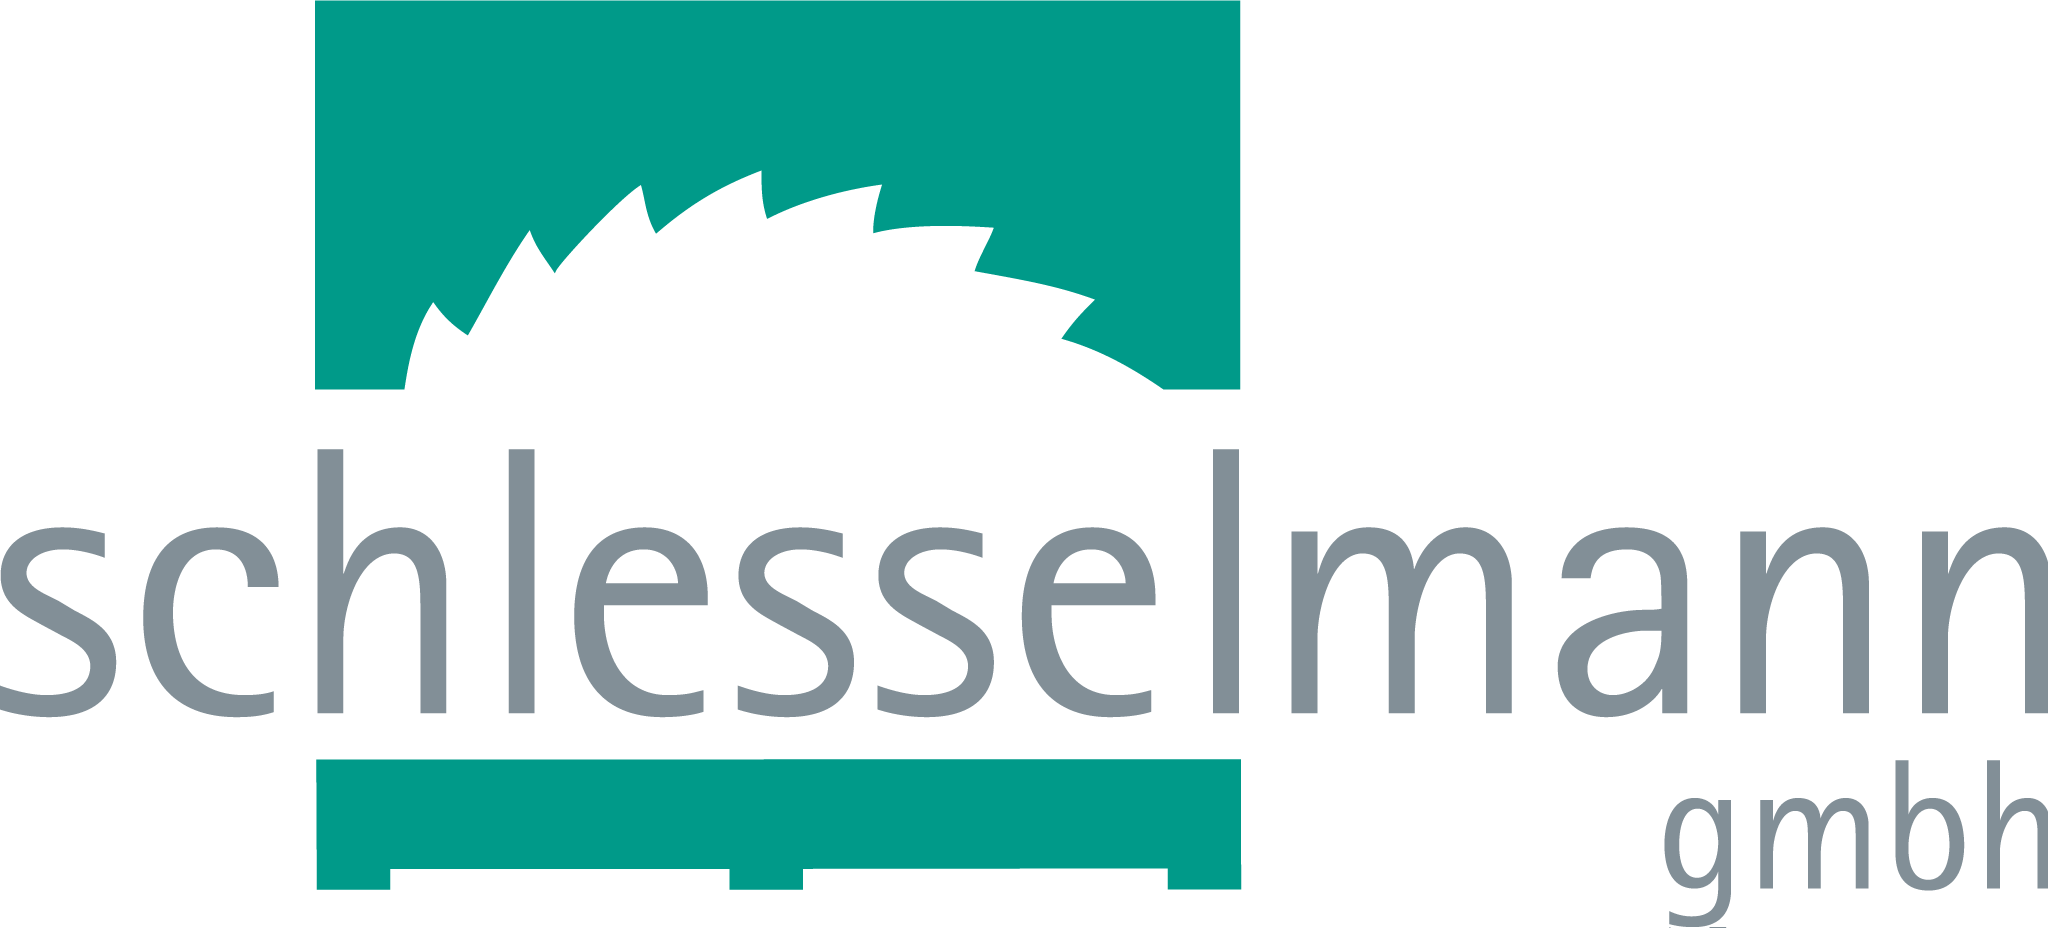 Schlesselmann Logo 4c